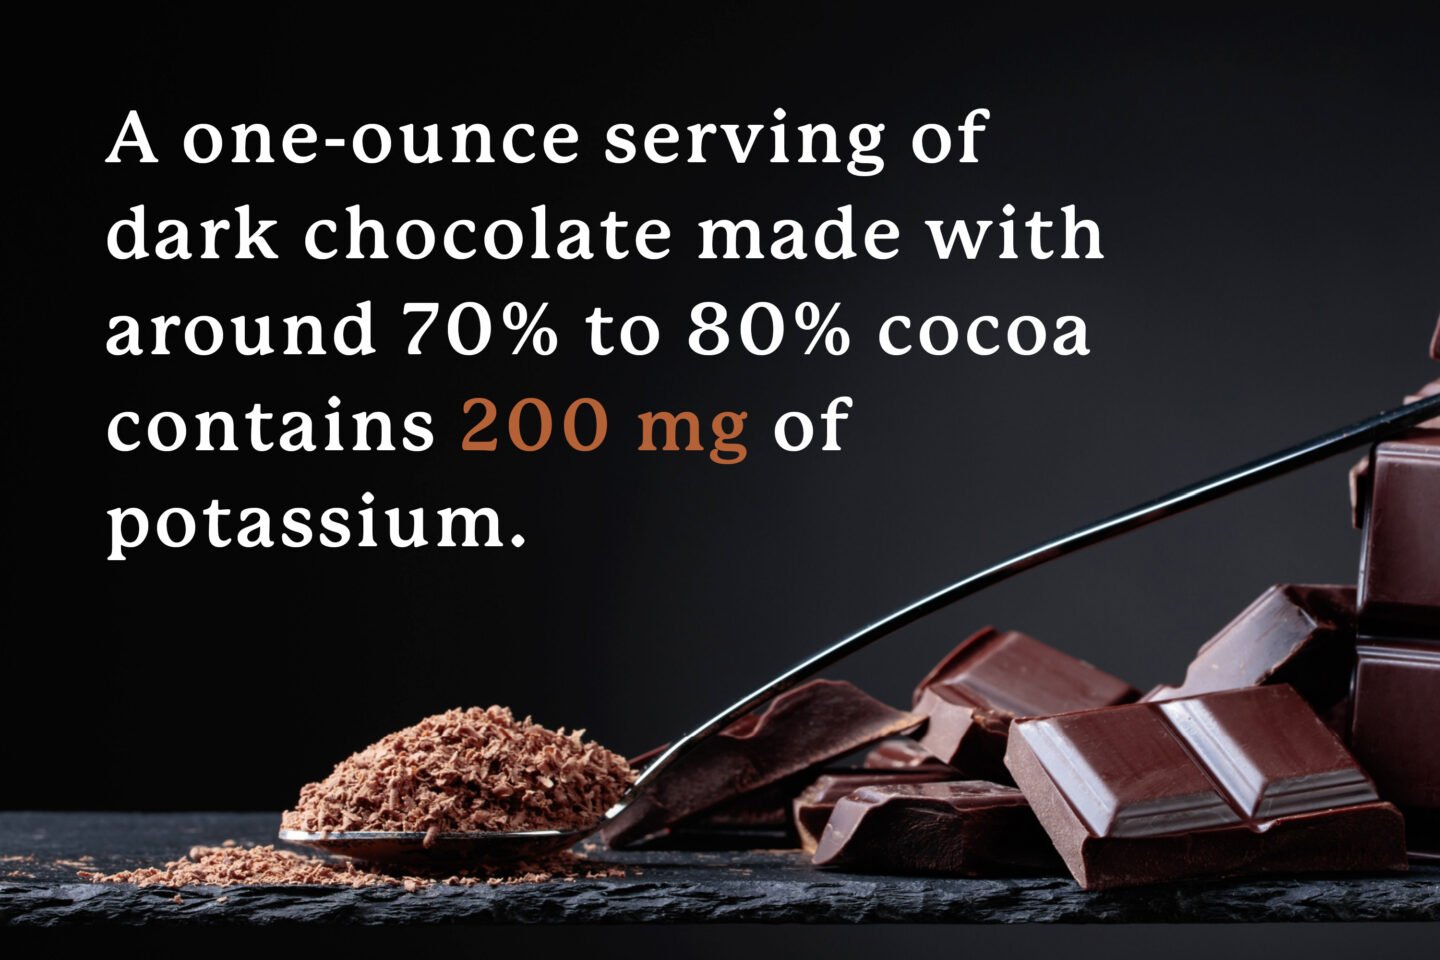 potassium in nearly pure dark chocolate